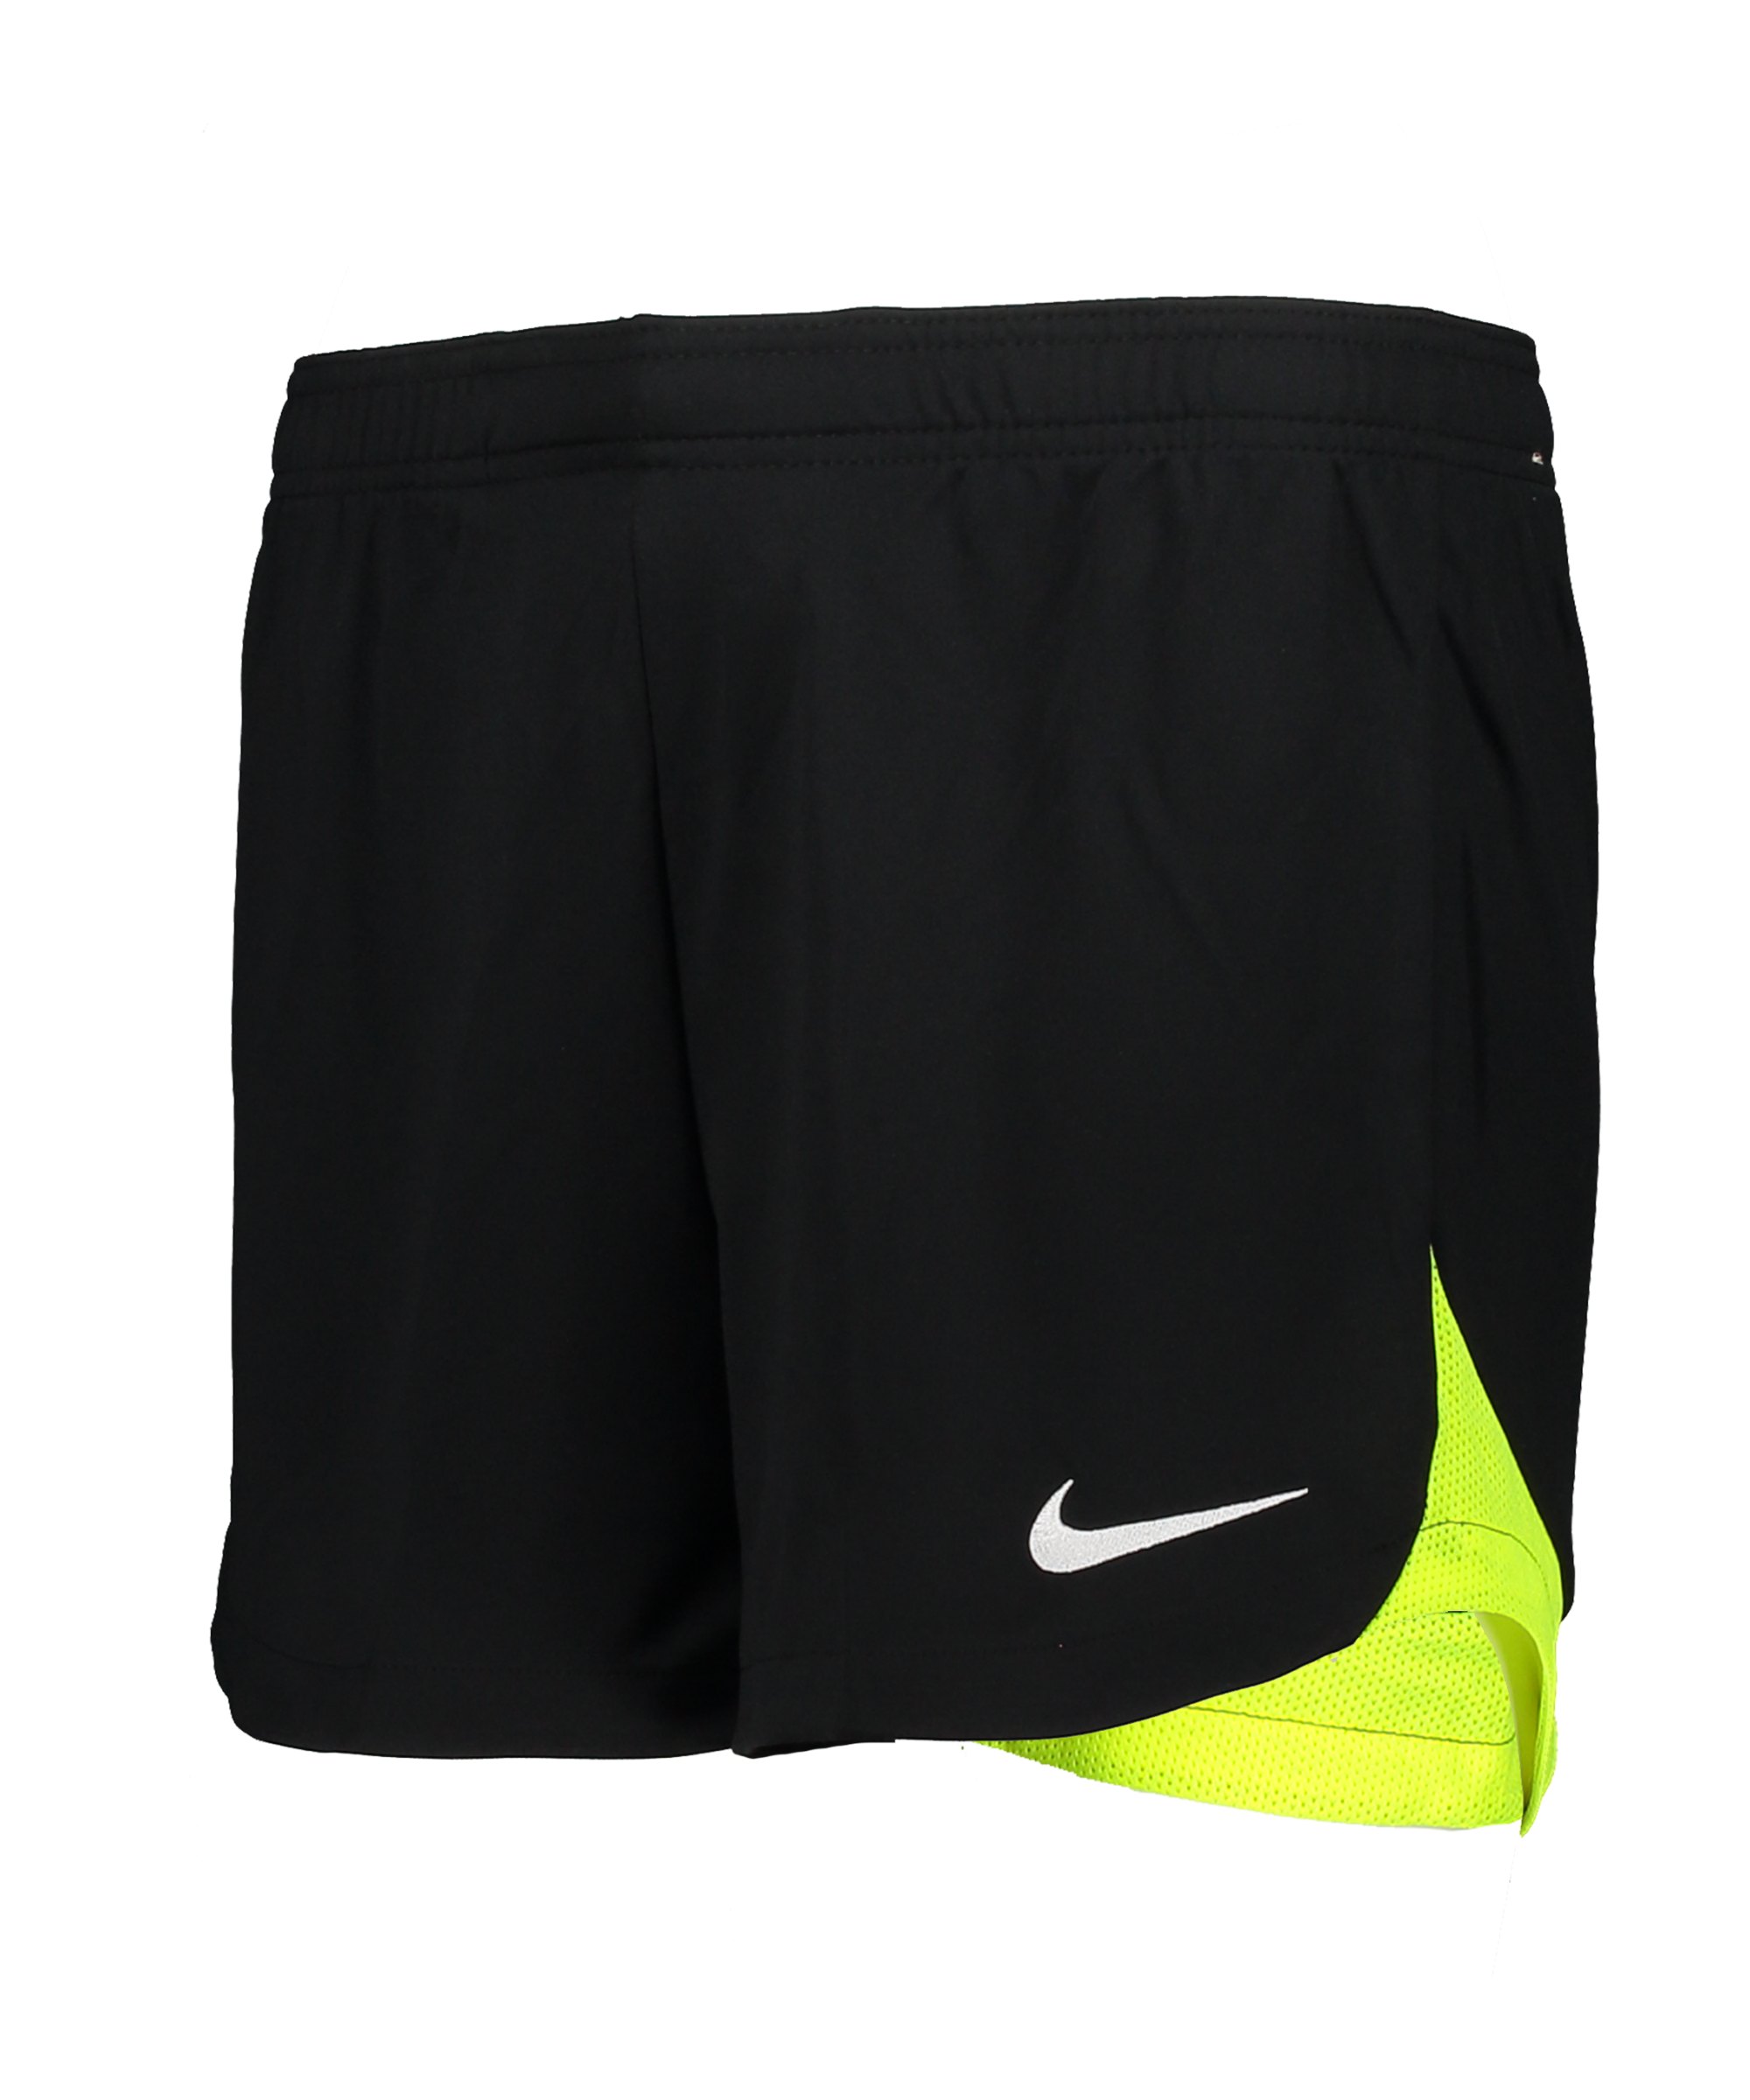 Nike Academy Pro Short Damen Schwarz Gelb F010 - schwarz